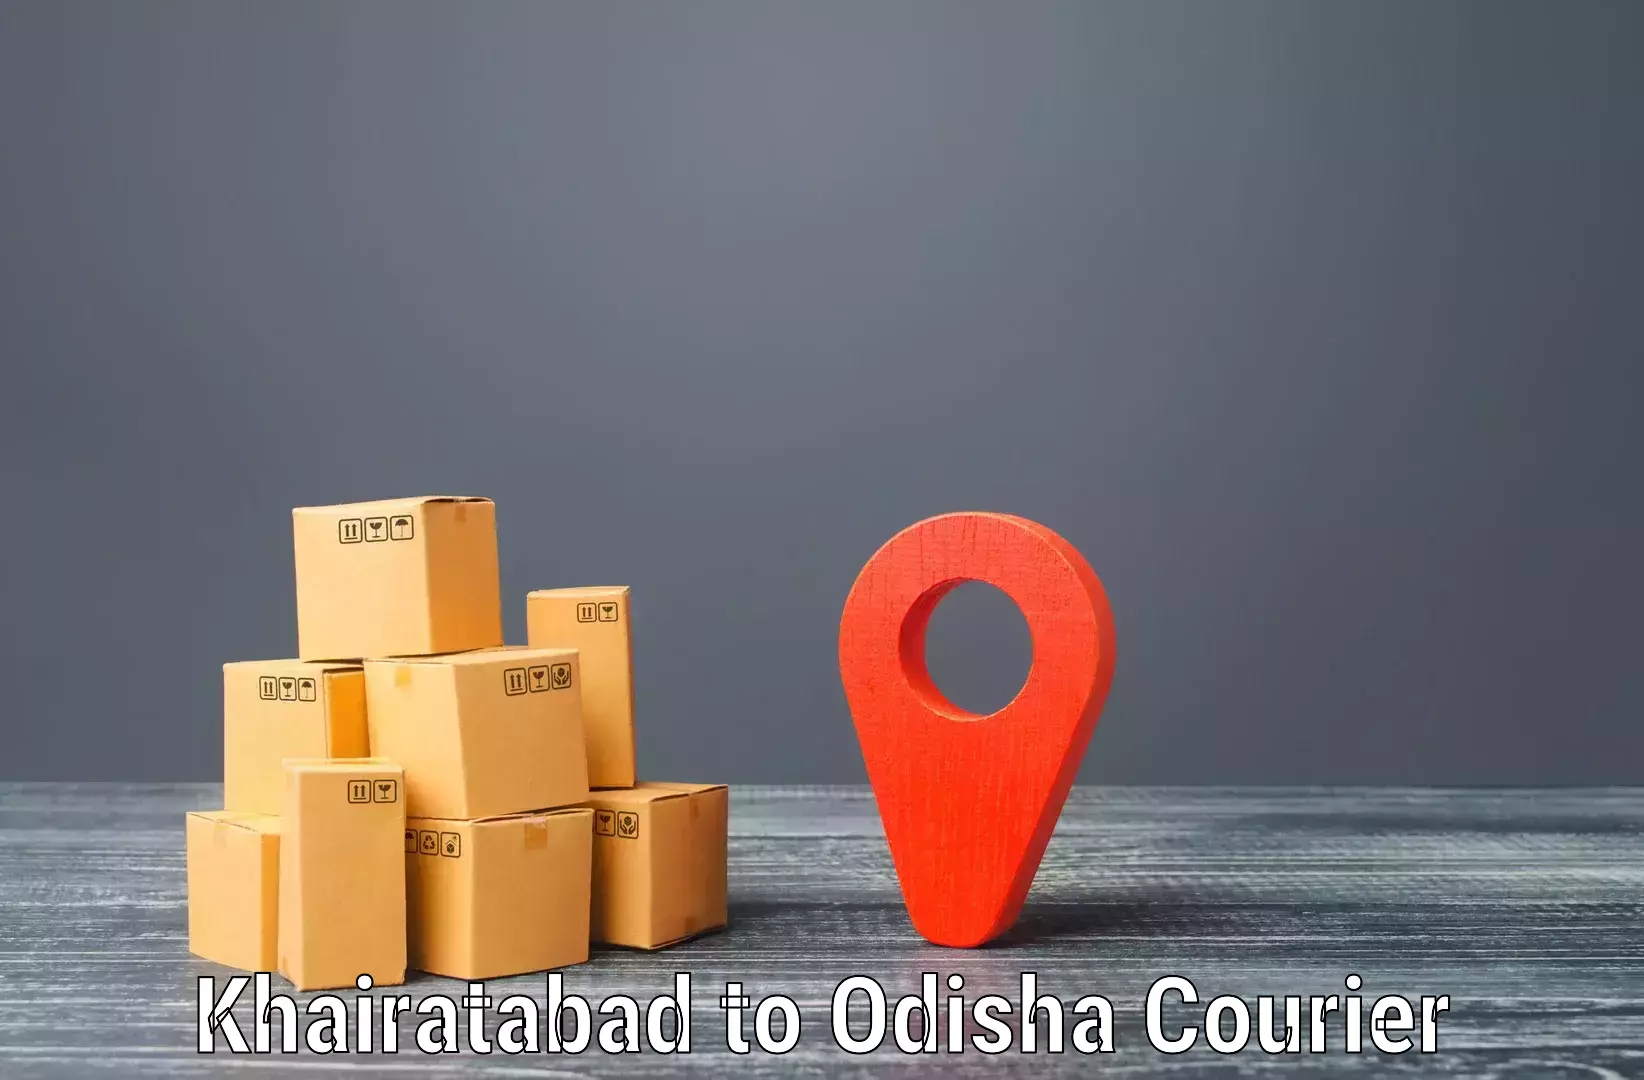 State-of-the-art courier technology Khairatabad to Bhutasarasingi